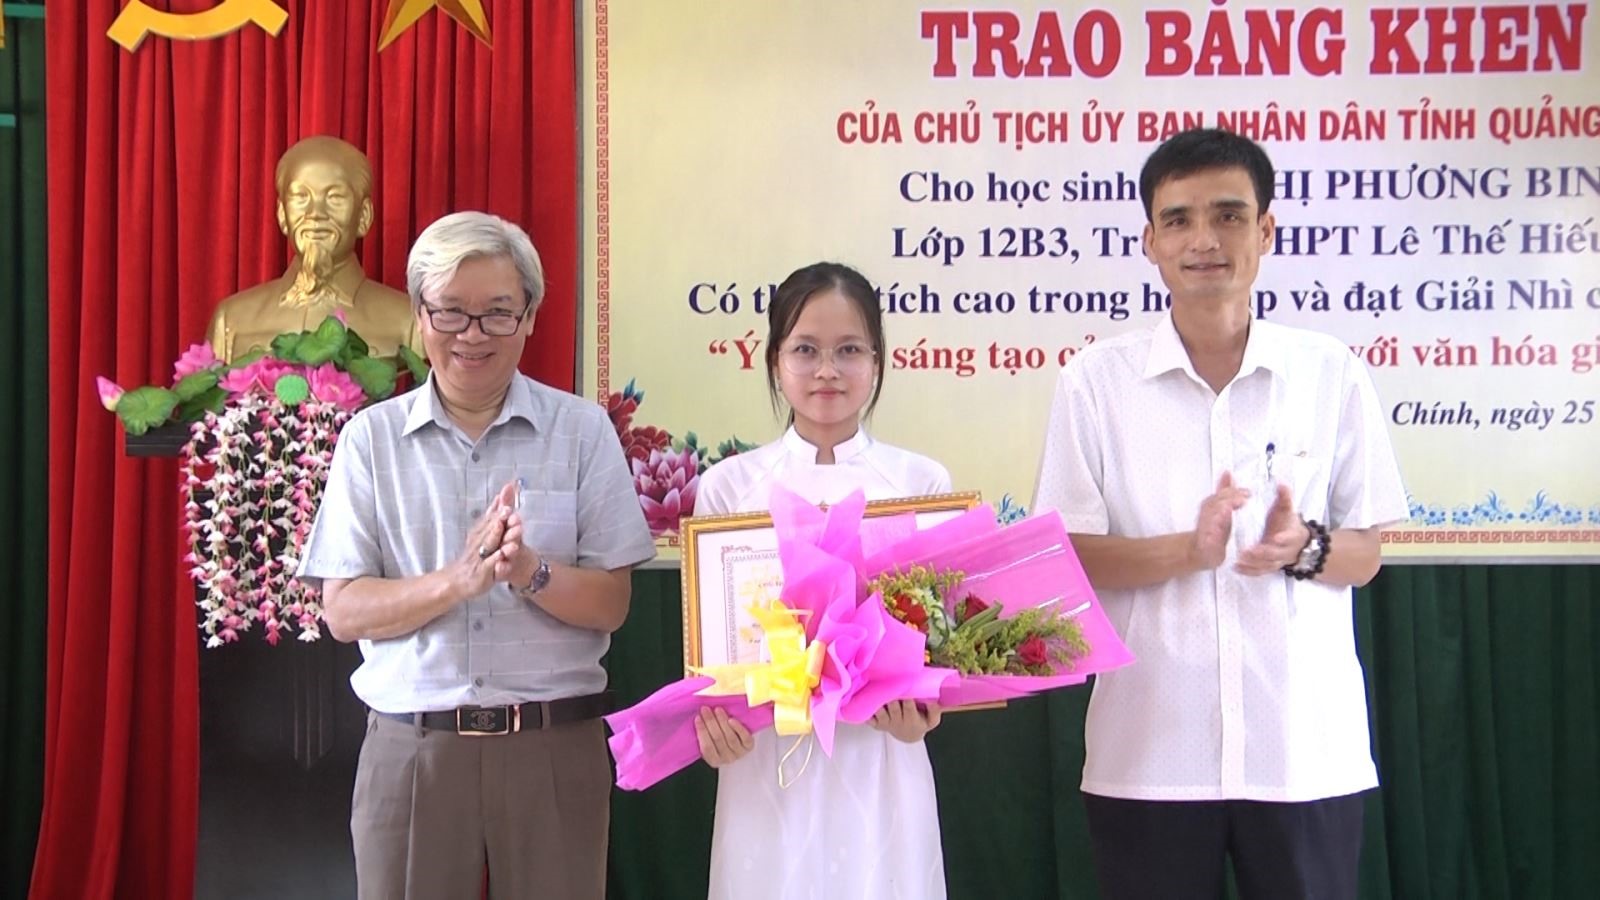 Em Võ Thị Phương Bin đạt giải Nhì cuộc thi “Ý tưởng sáng tạo của thanh niên với văn hóa giao thông” năm 2019